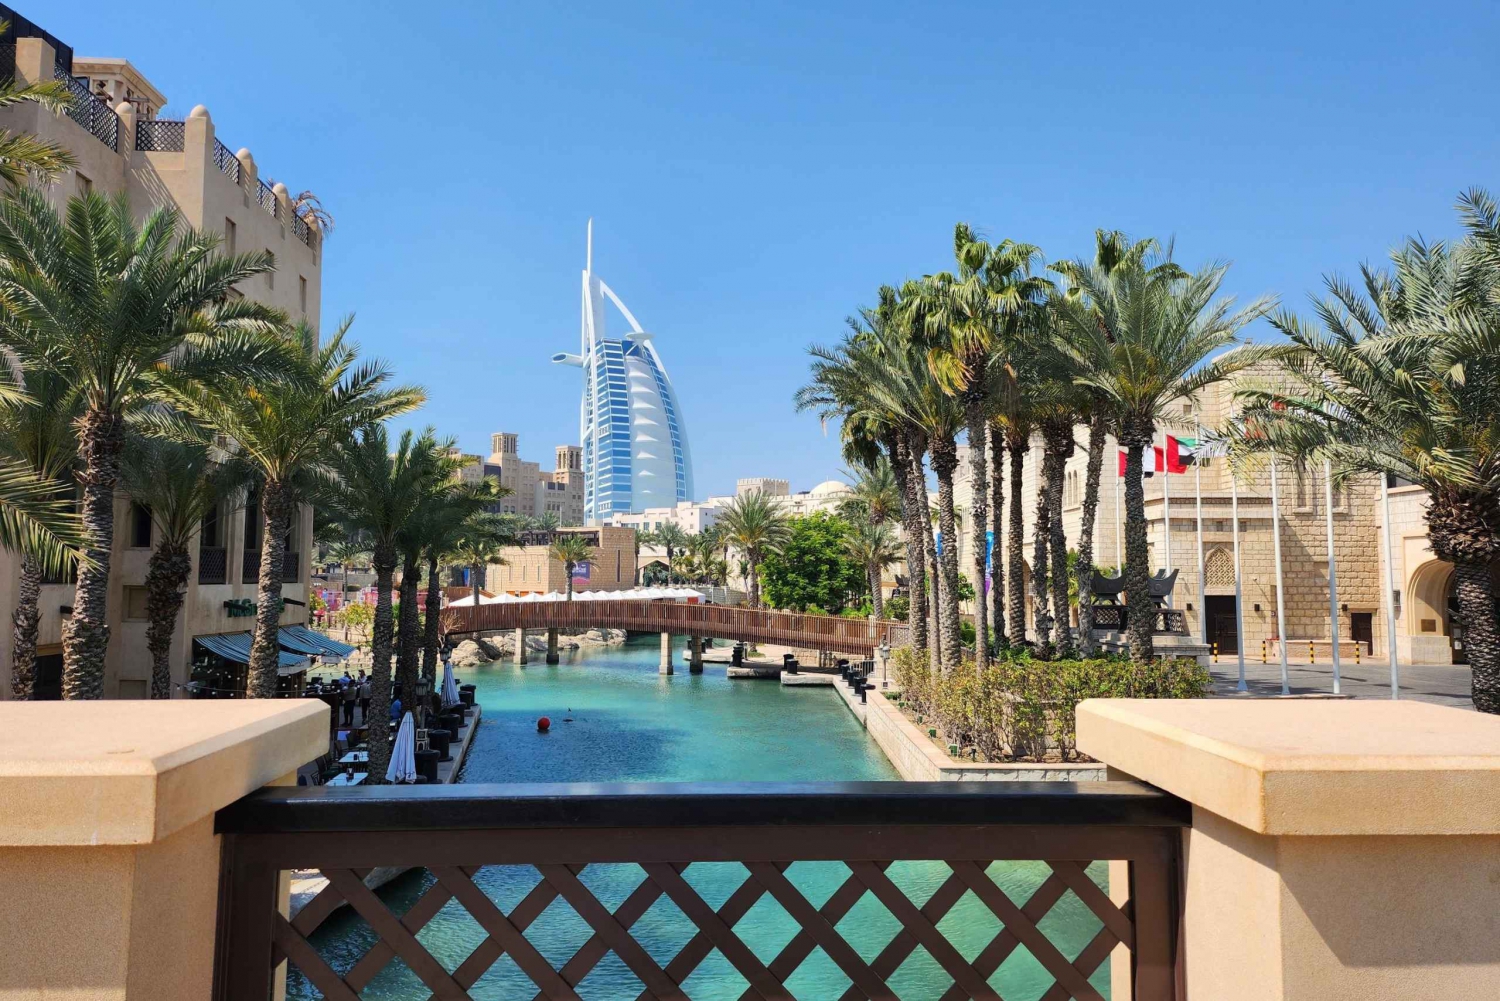 Дубай: достопримечательности города, вход в рамку, базары и голубая мечеть